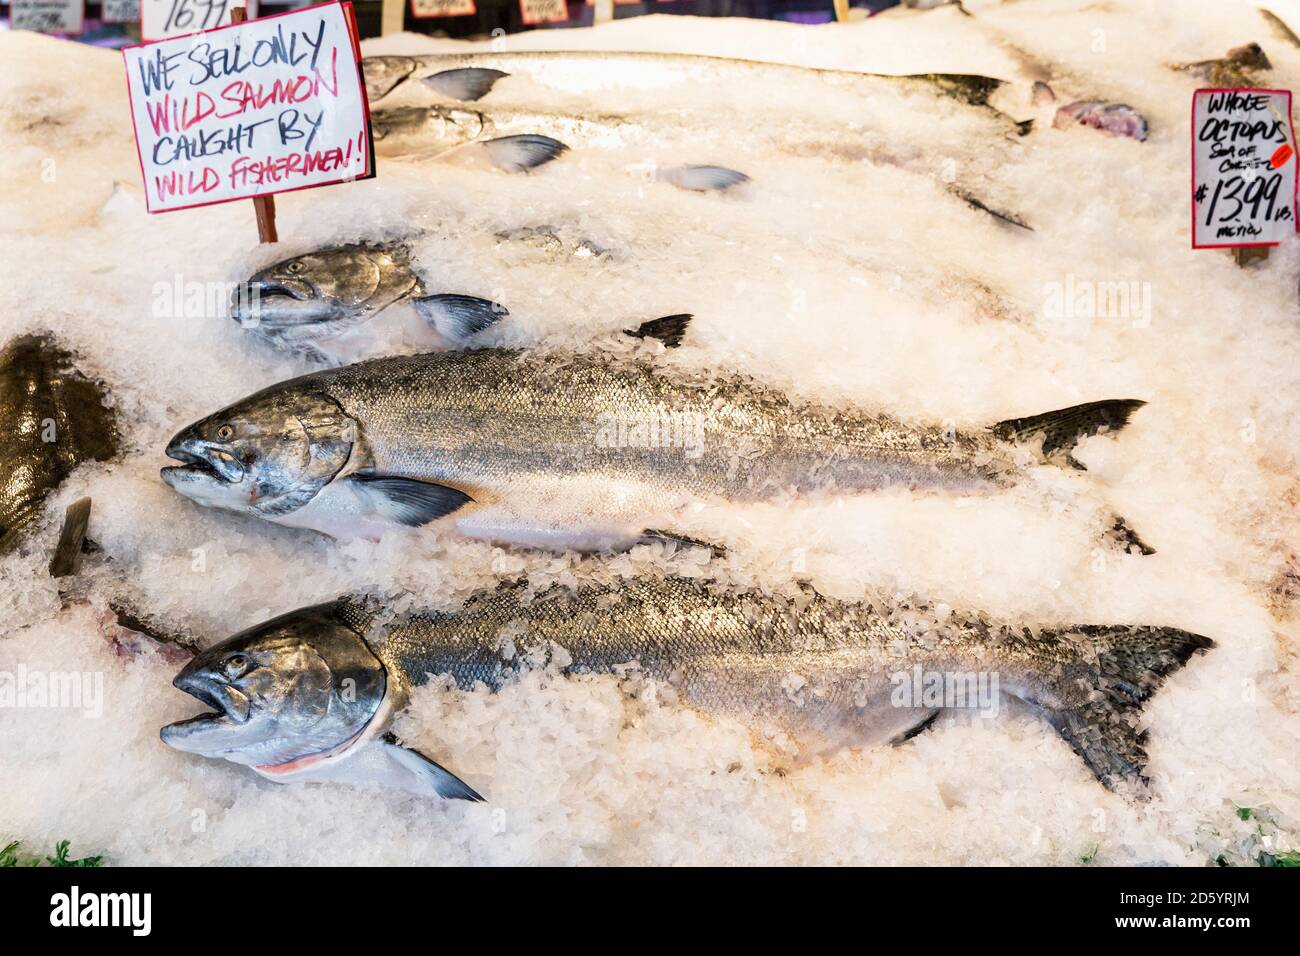 USA, Washington state, Seattle, Pike Place Fish Market, salmoni selvatici allo stand del mercato Foto Stock